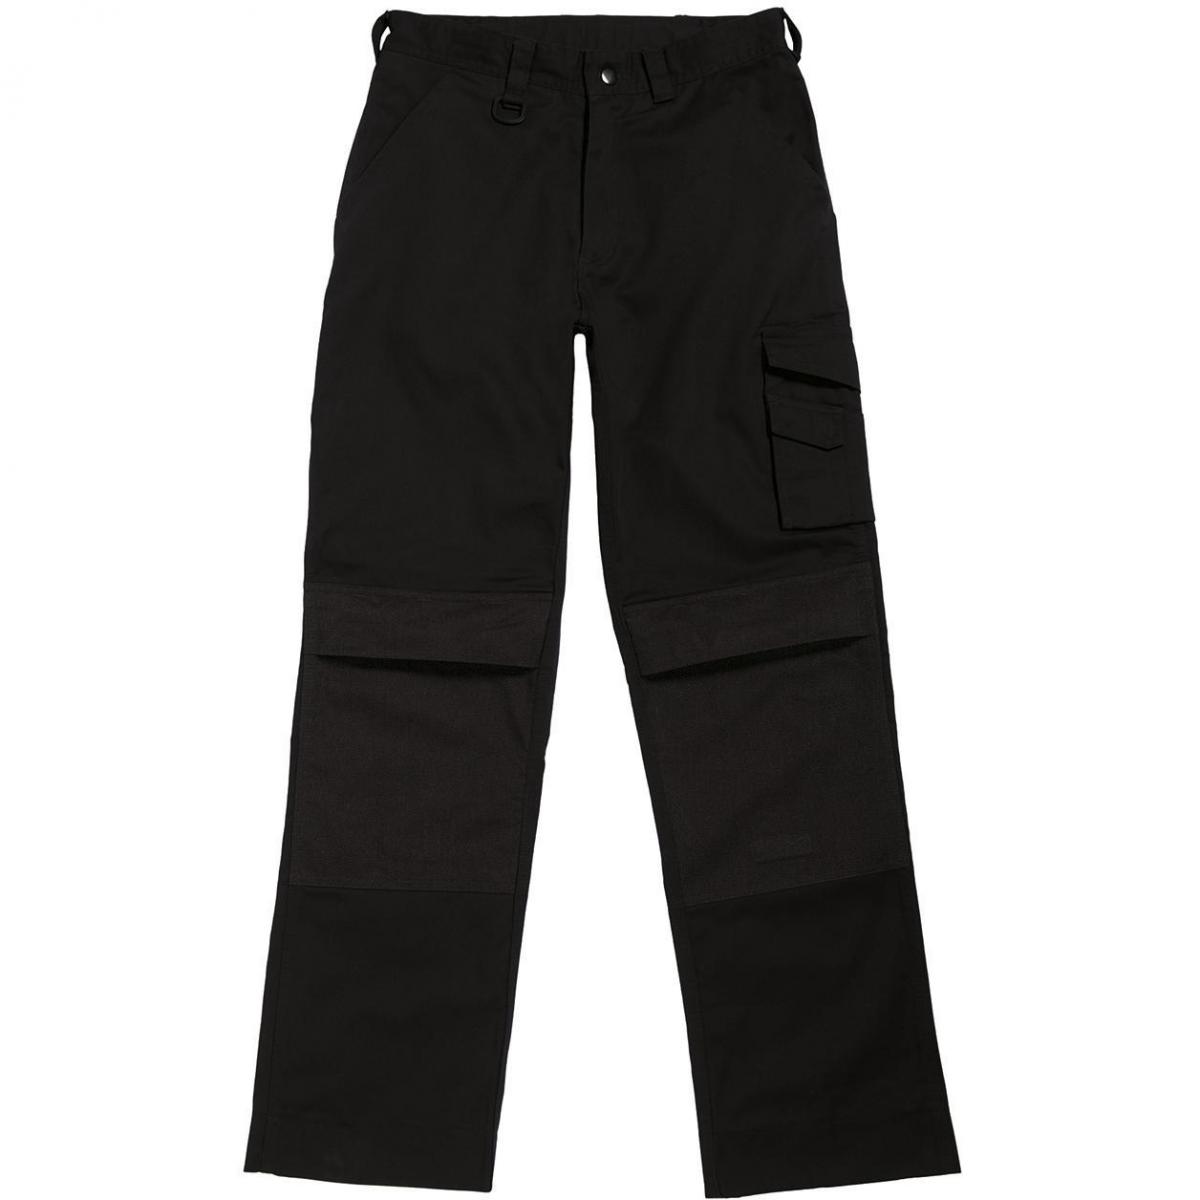 Hersteller: B&C Pro Collection Herstellernummer: BUC50 Artikelbezeichnung: Basic Workwear Trousers Einschubtaschen für Kniepolster Farbe: Black